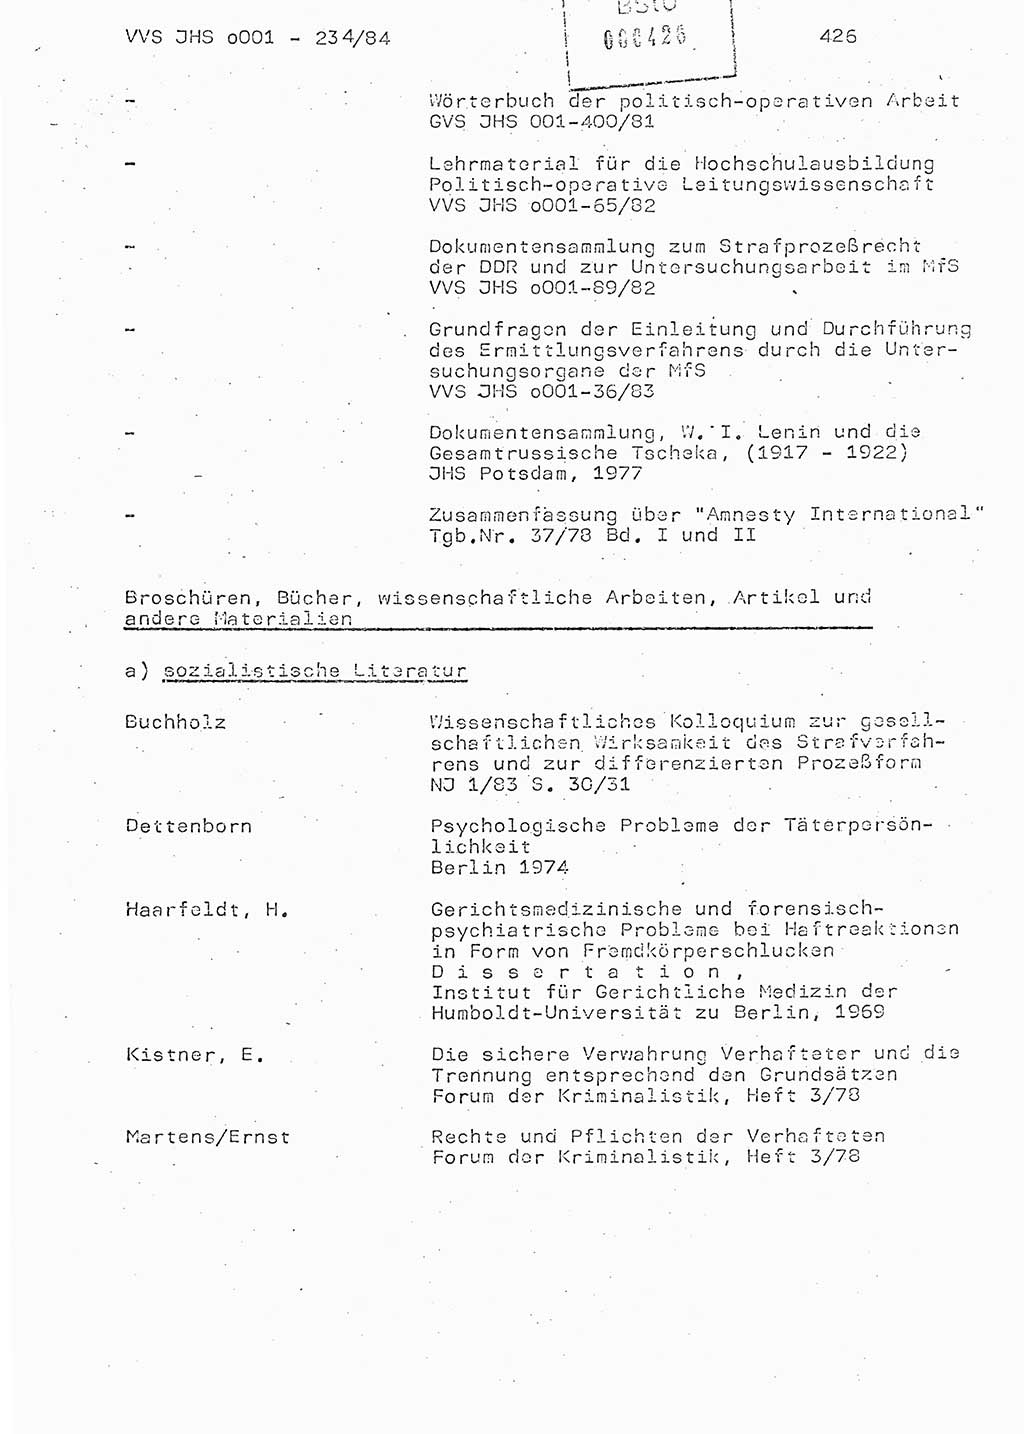 Dissertation Oberst Siegfried Rataizick (Abt. ⅩⅣ), Oberstleutnant Volkmar Heinz (Abt. ⅩⅣ), Oberstleutnant Werner Stein (HA Ⅸ), Hauptmann Heinz Conrad (JHS), Ministerium für Staatssicherheit (MfS) [Deutsche Demokratische Republik (DDR)], Juristische Hochschule (JHS), Vertrauliche Verschlußsache (VVS) o001-234/84, Potsdam 1984, Seite 426 (Diss. MfS DDR JHS VVS o001-234/84 1984, S. 426)